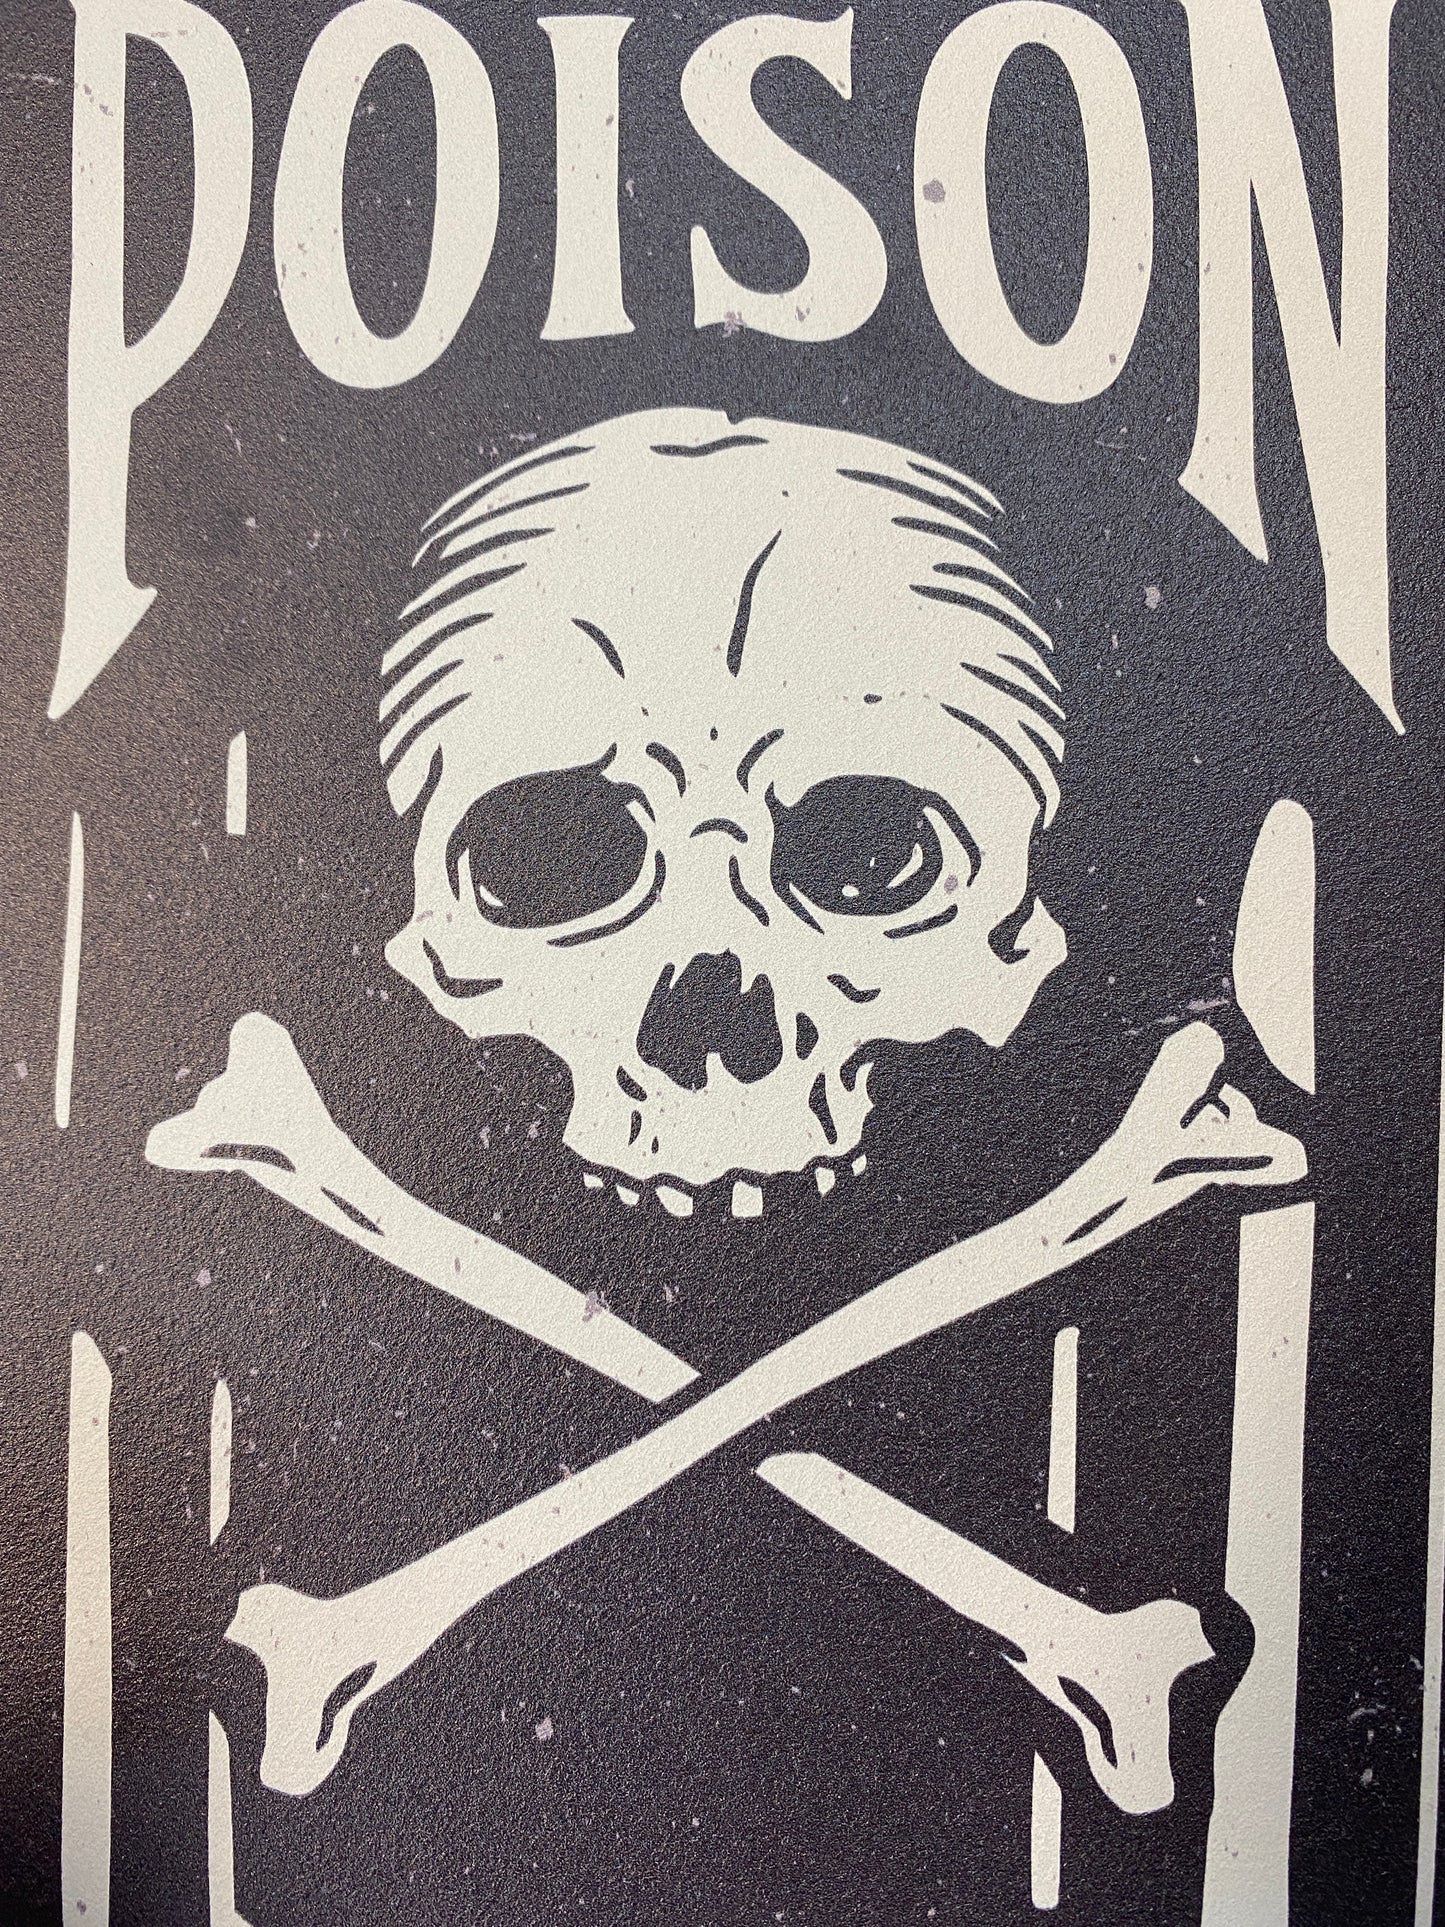 Giant Poison Bottle Sign